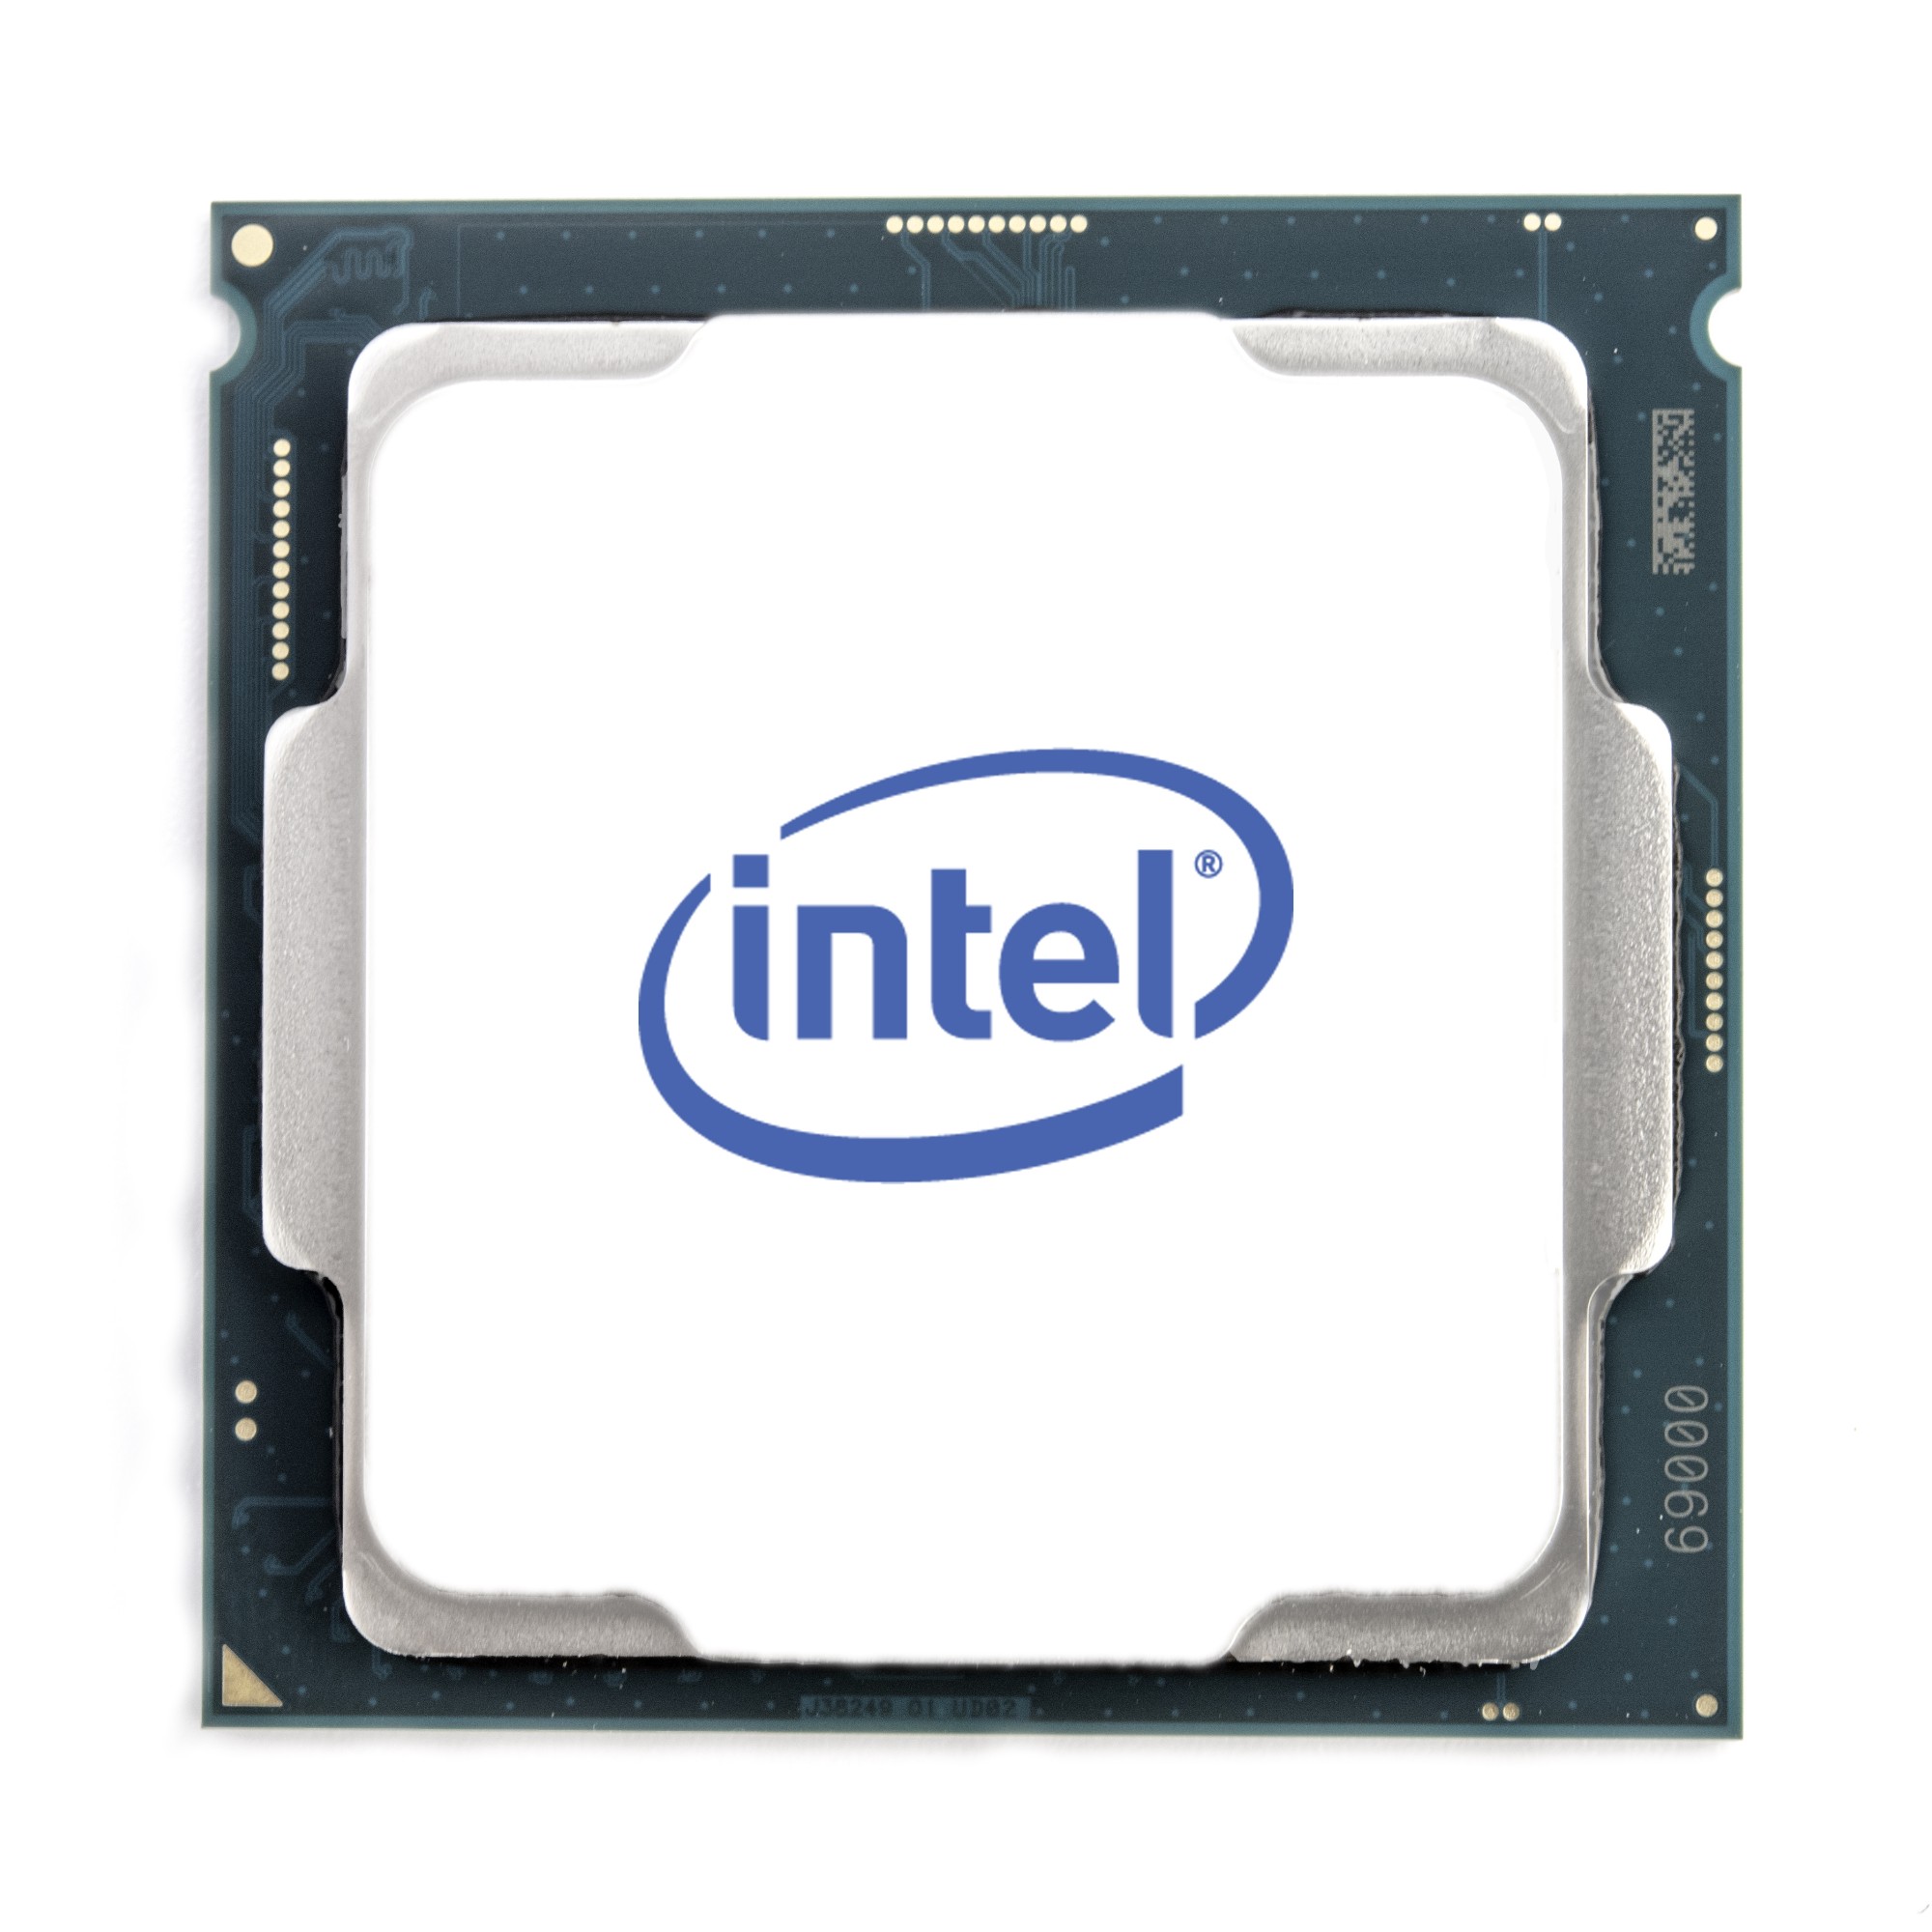 Hewlett Packard Enterprise Xeon E5-2609 v3 processor 1.9 GHz 15 MB